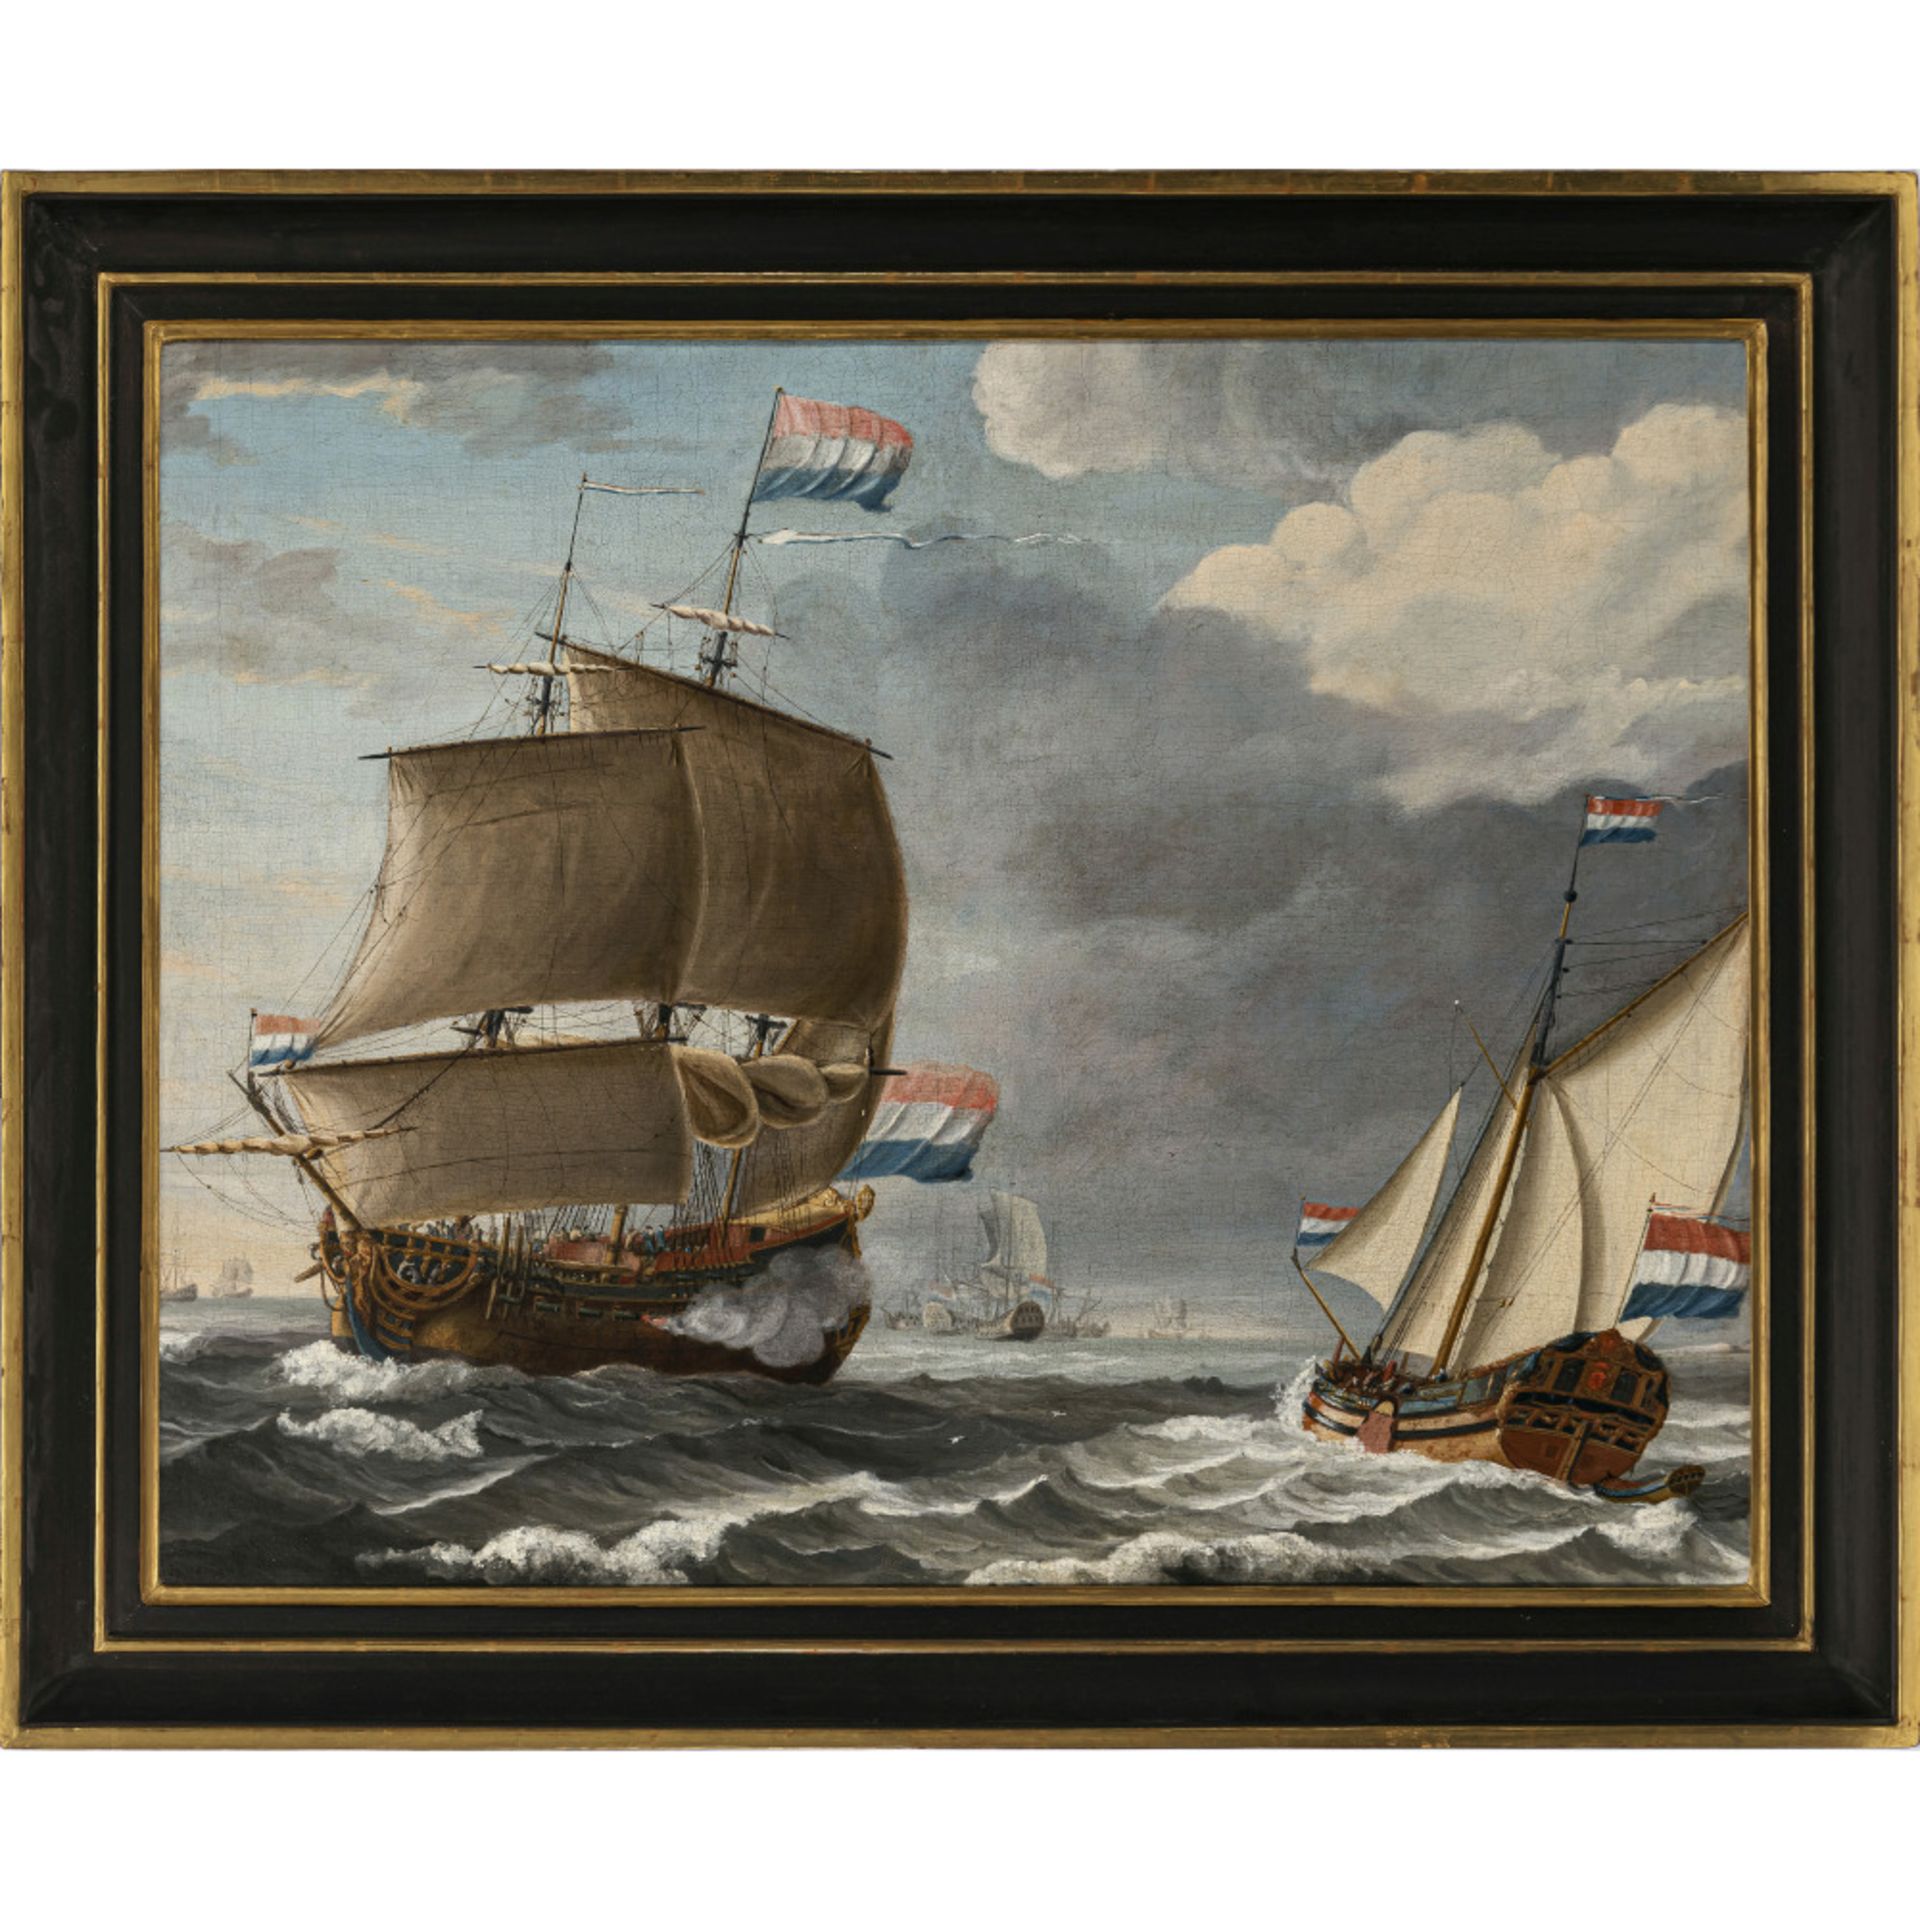 Niederlande (Lieve Verschuier, 1627 Rotterdam - 1686 ebenda, ?) 17th century - Navy - Image 2 of 2